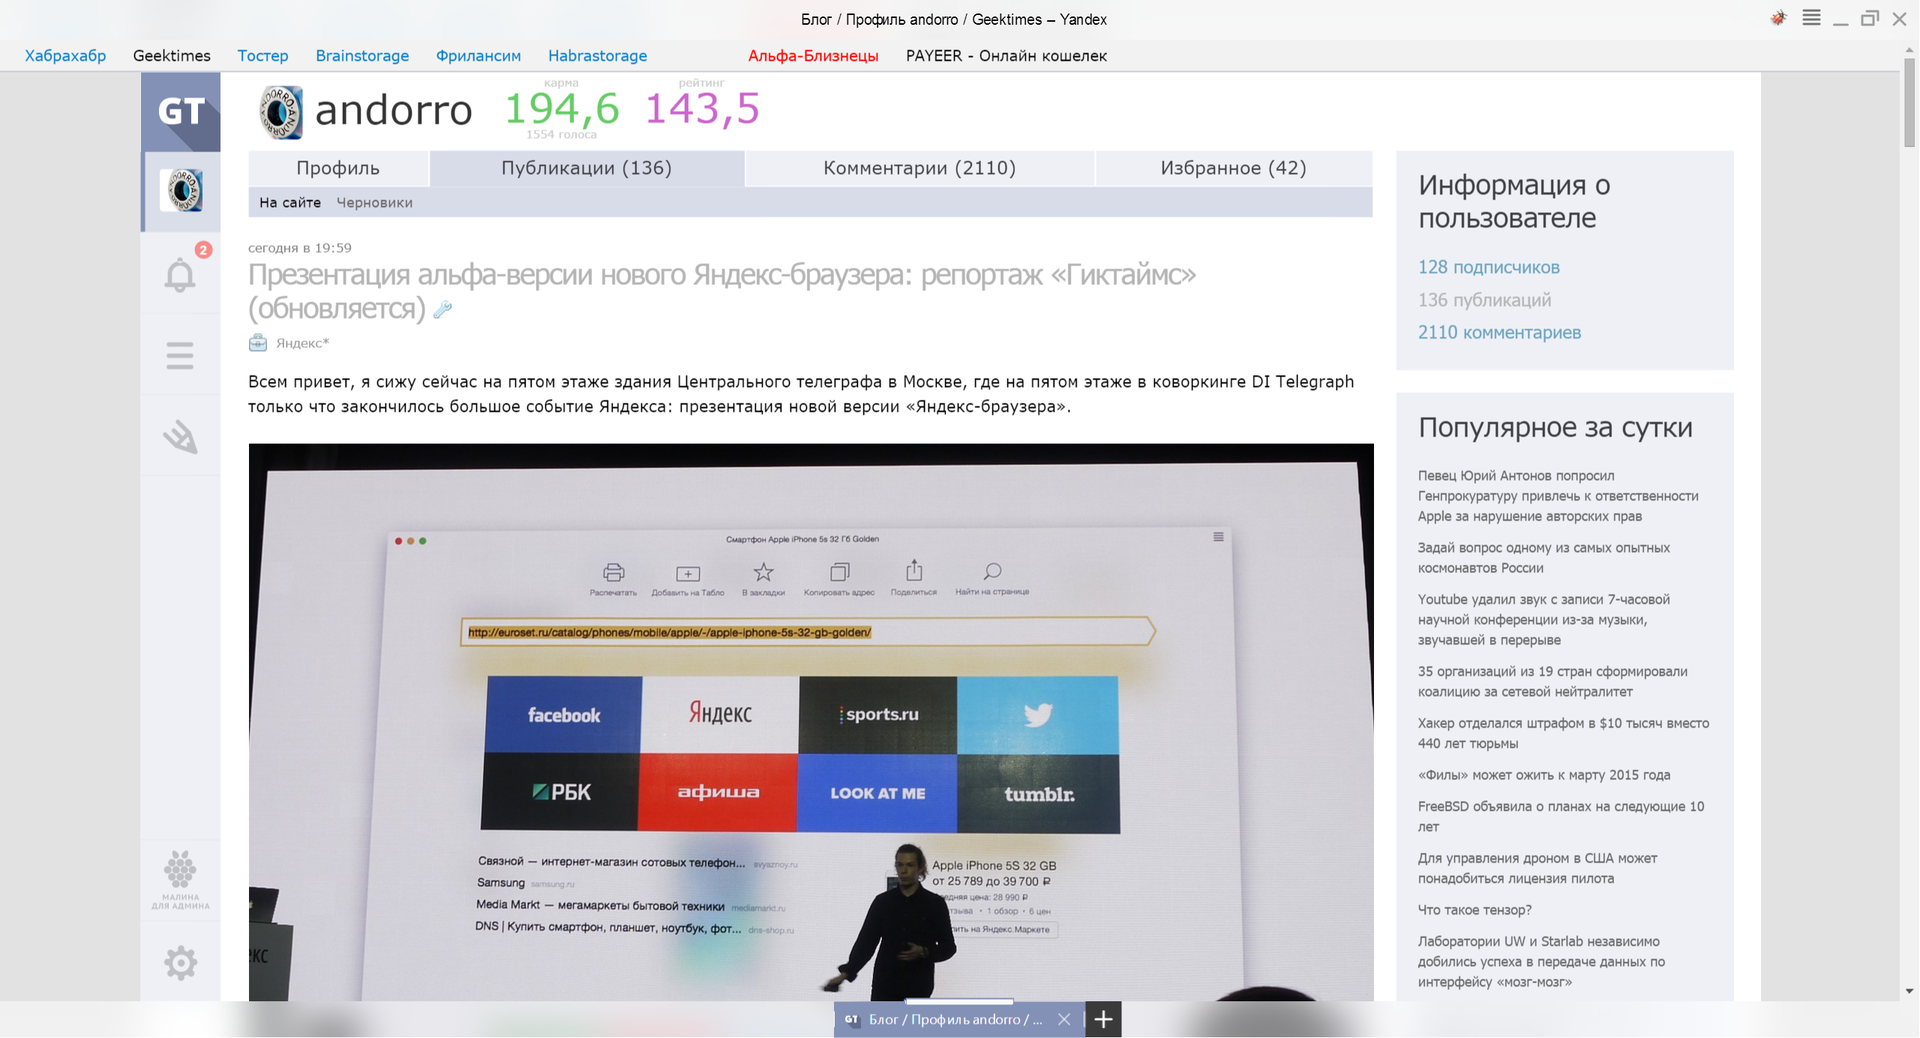 Презентация альфа-версии нового Яндекс-браузера: репортаж «Гиктаймс» - 11